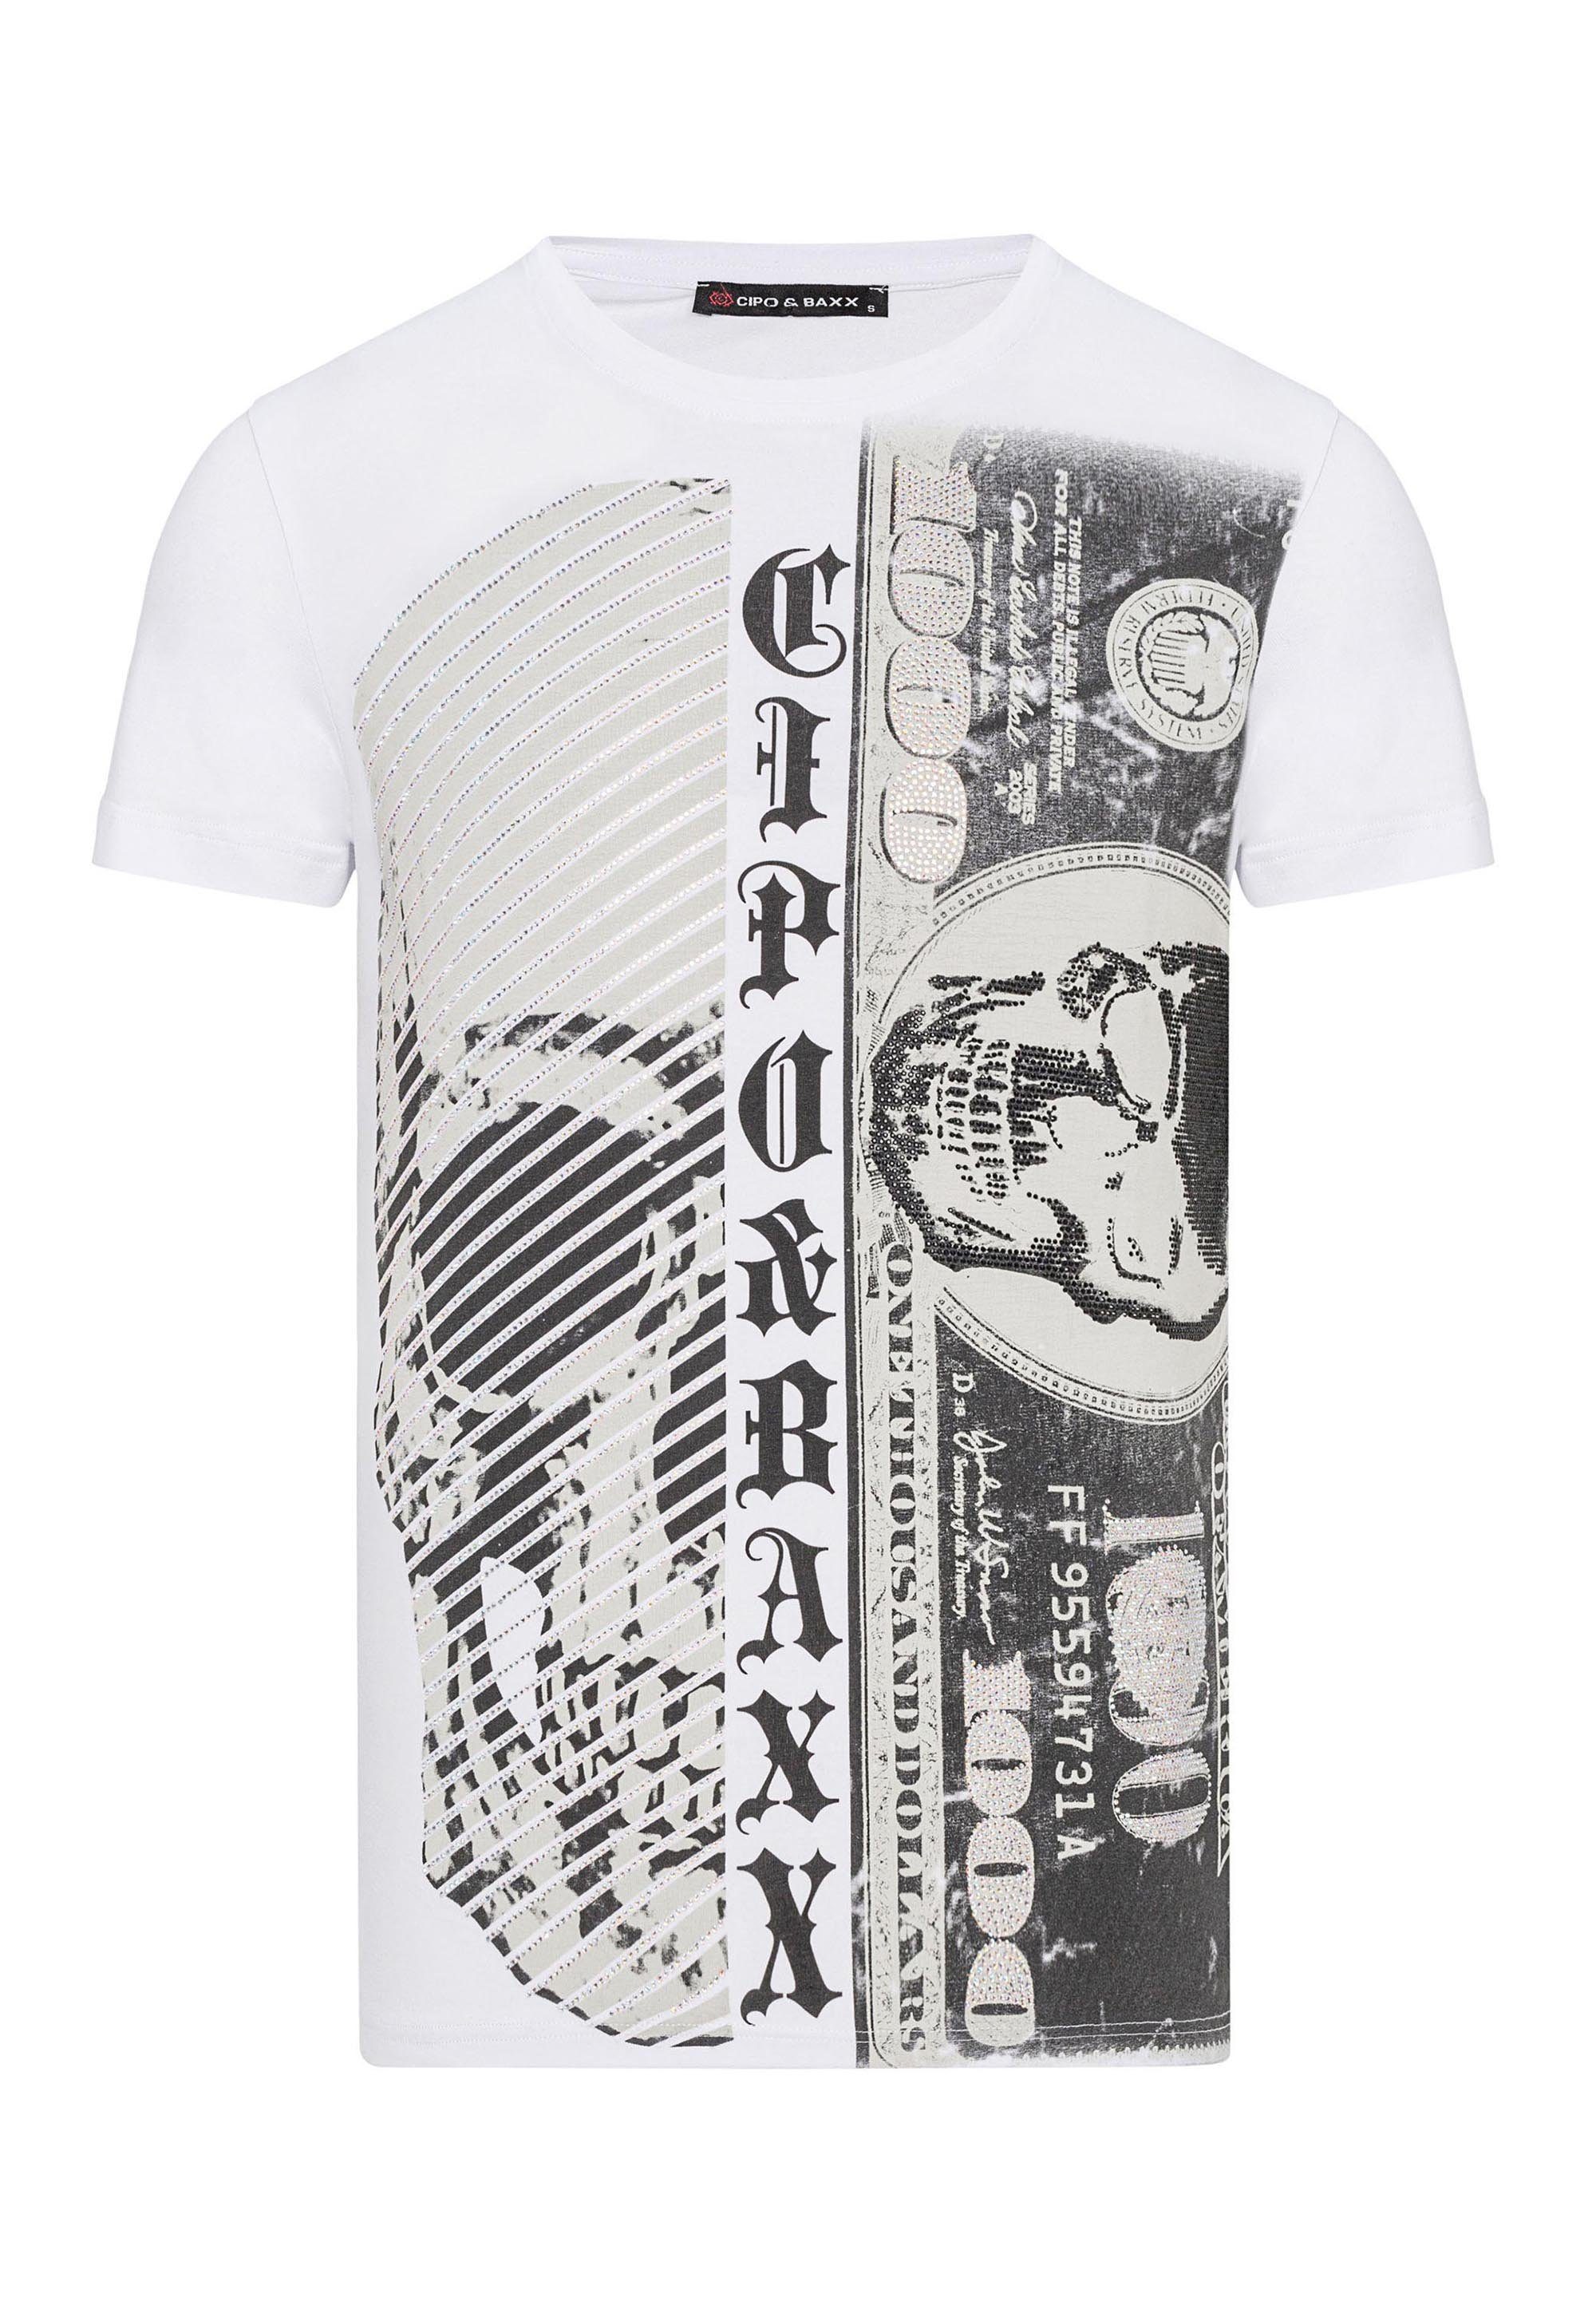 Cipo & Baxx T-Shirt mit Aufdruck weiß großem